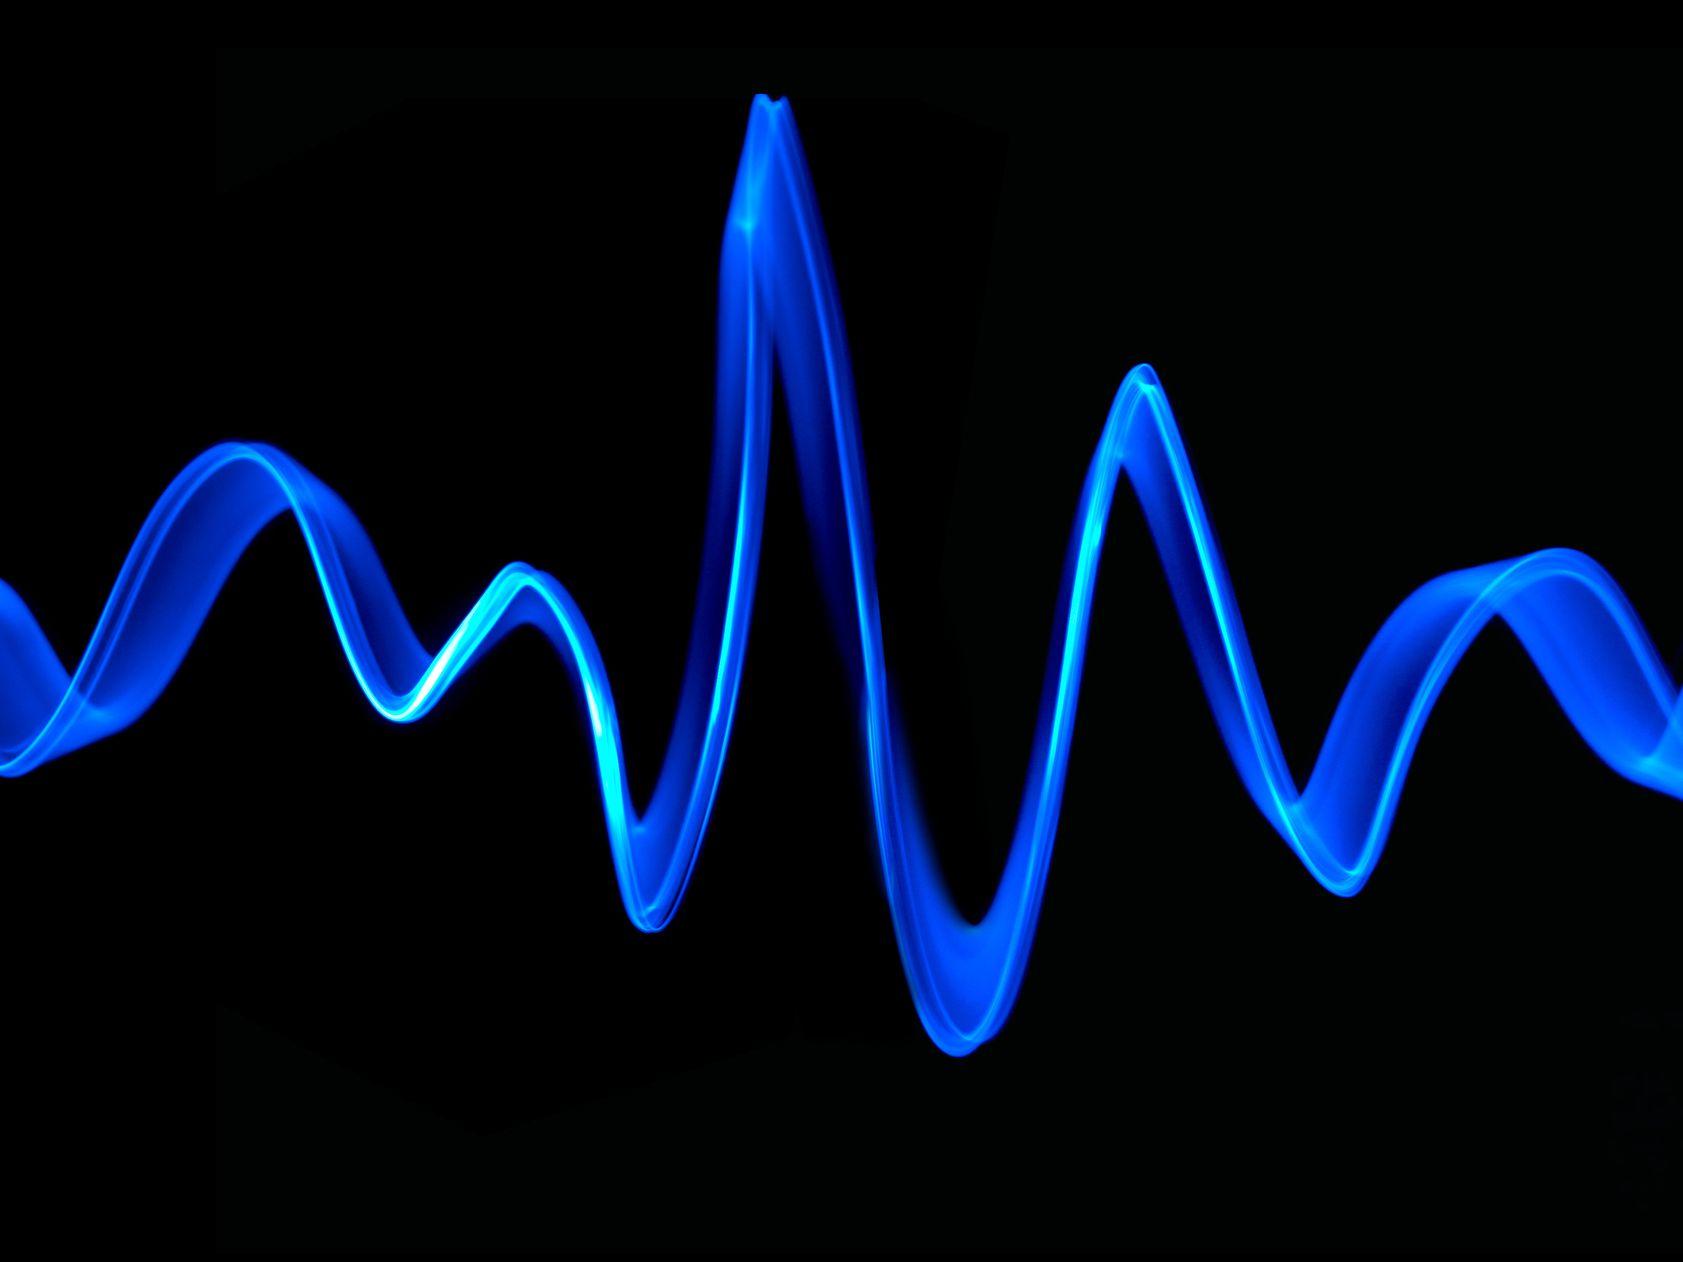 Sound wave.jpg